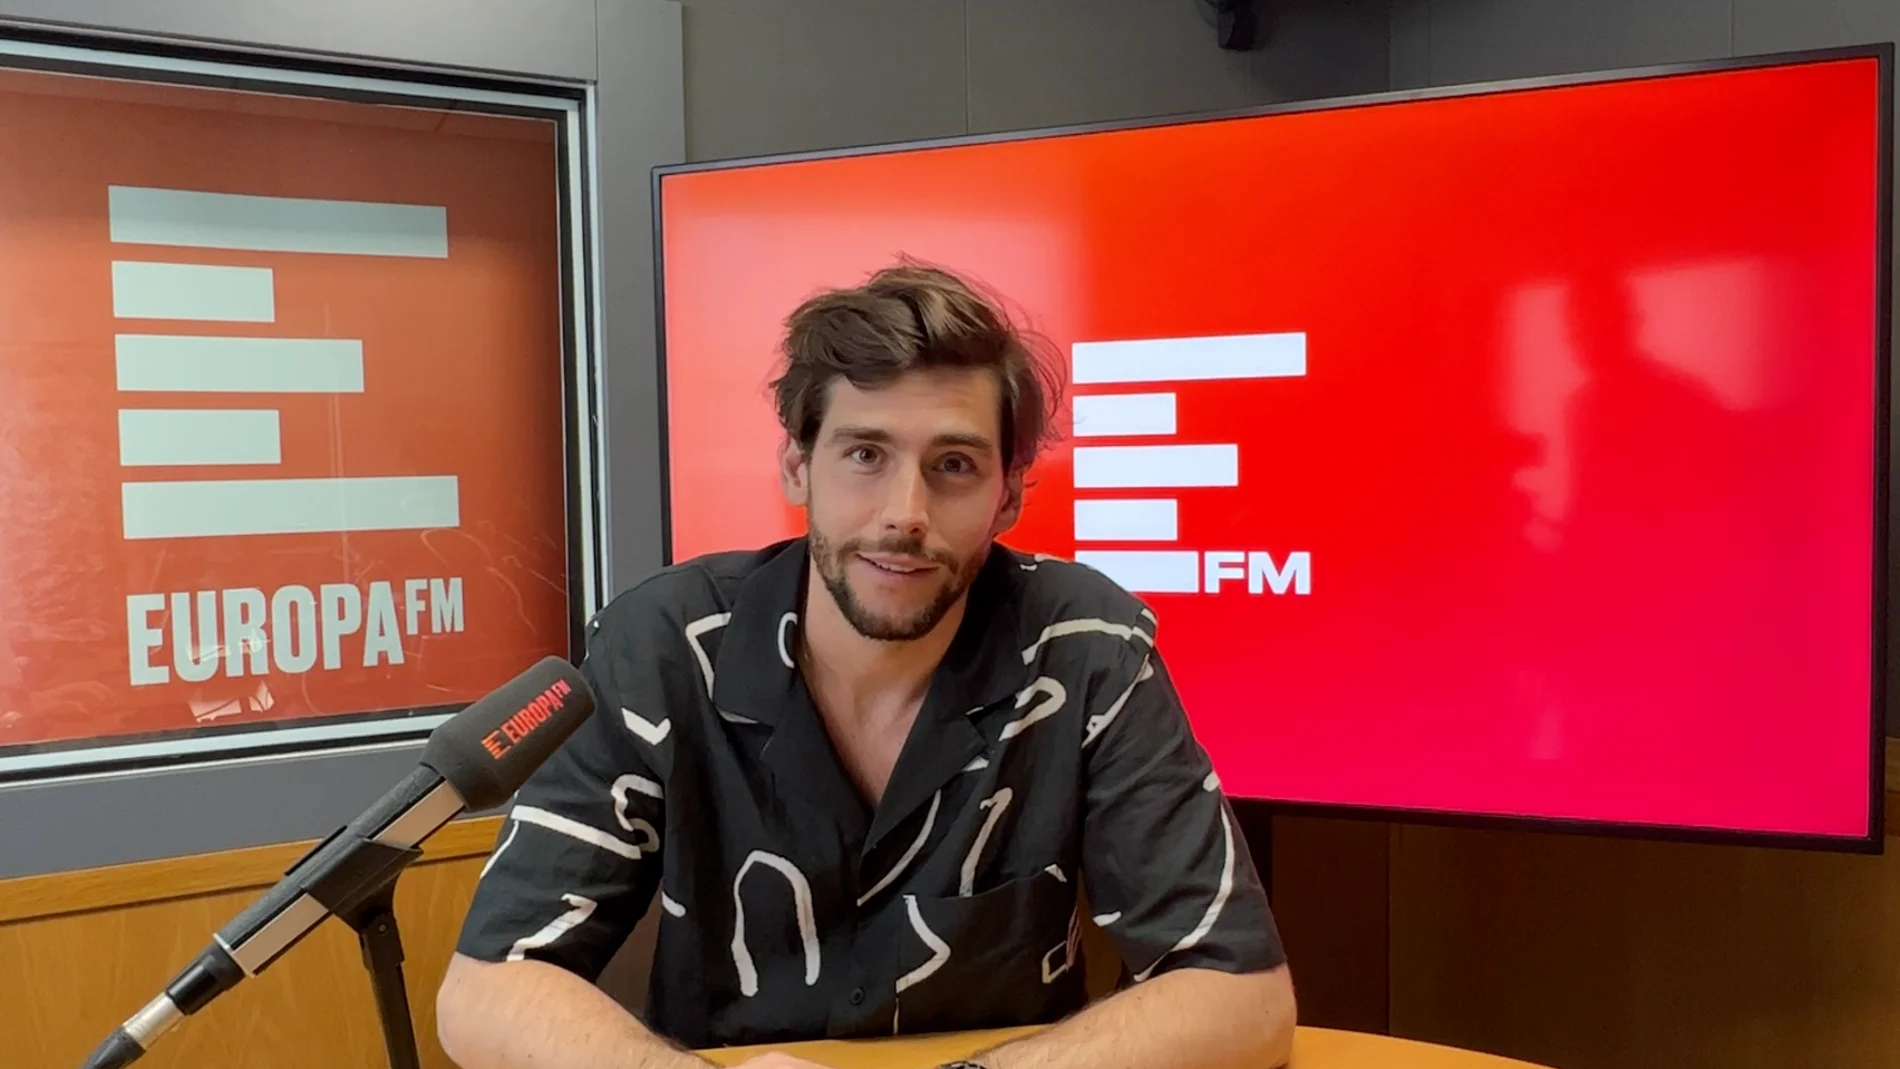 Álvaro Soler visita a Xavi Alfaro en Europa FM y presenta su nueva canción 'Muero'.